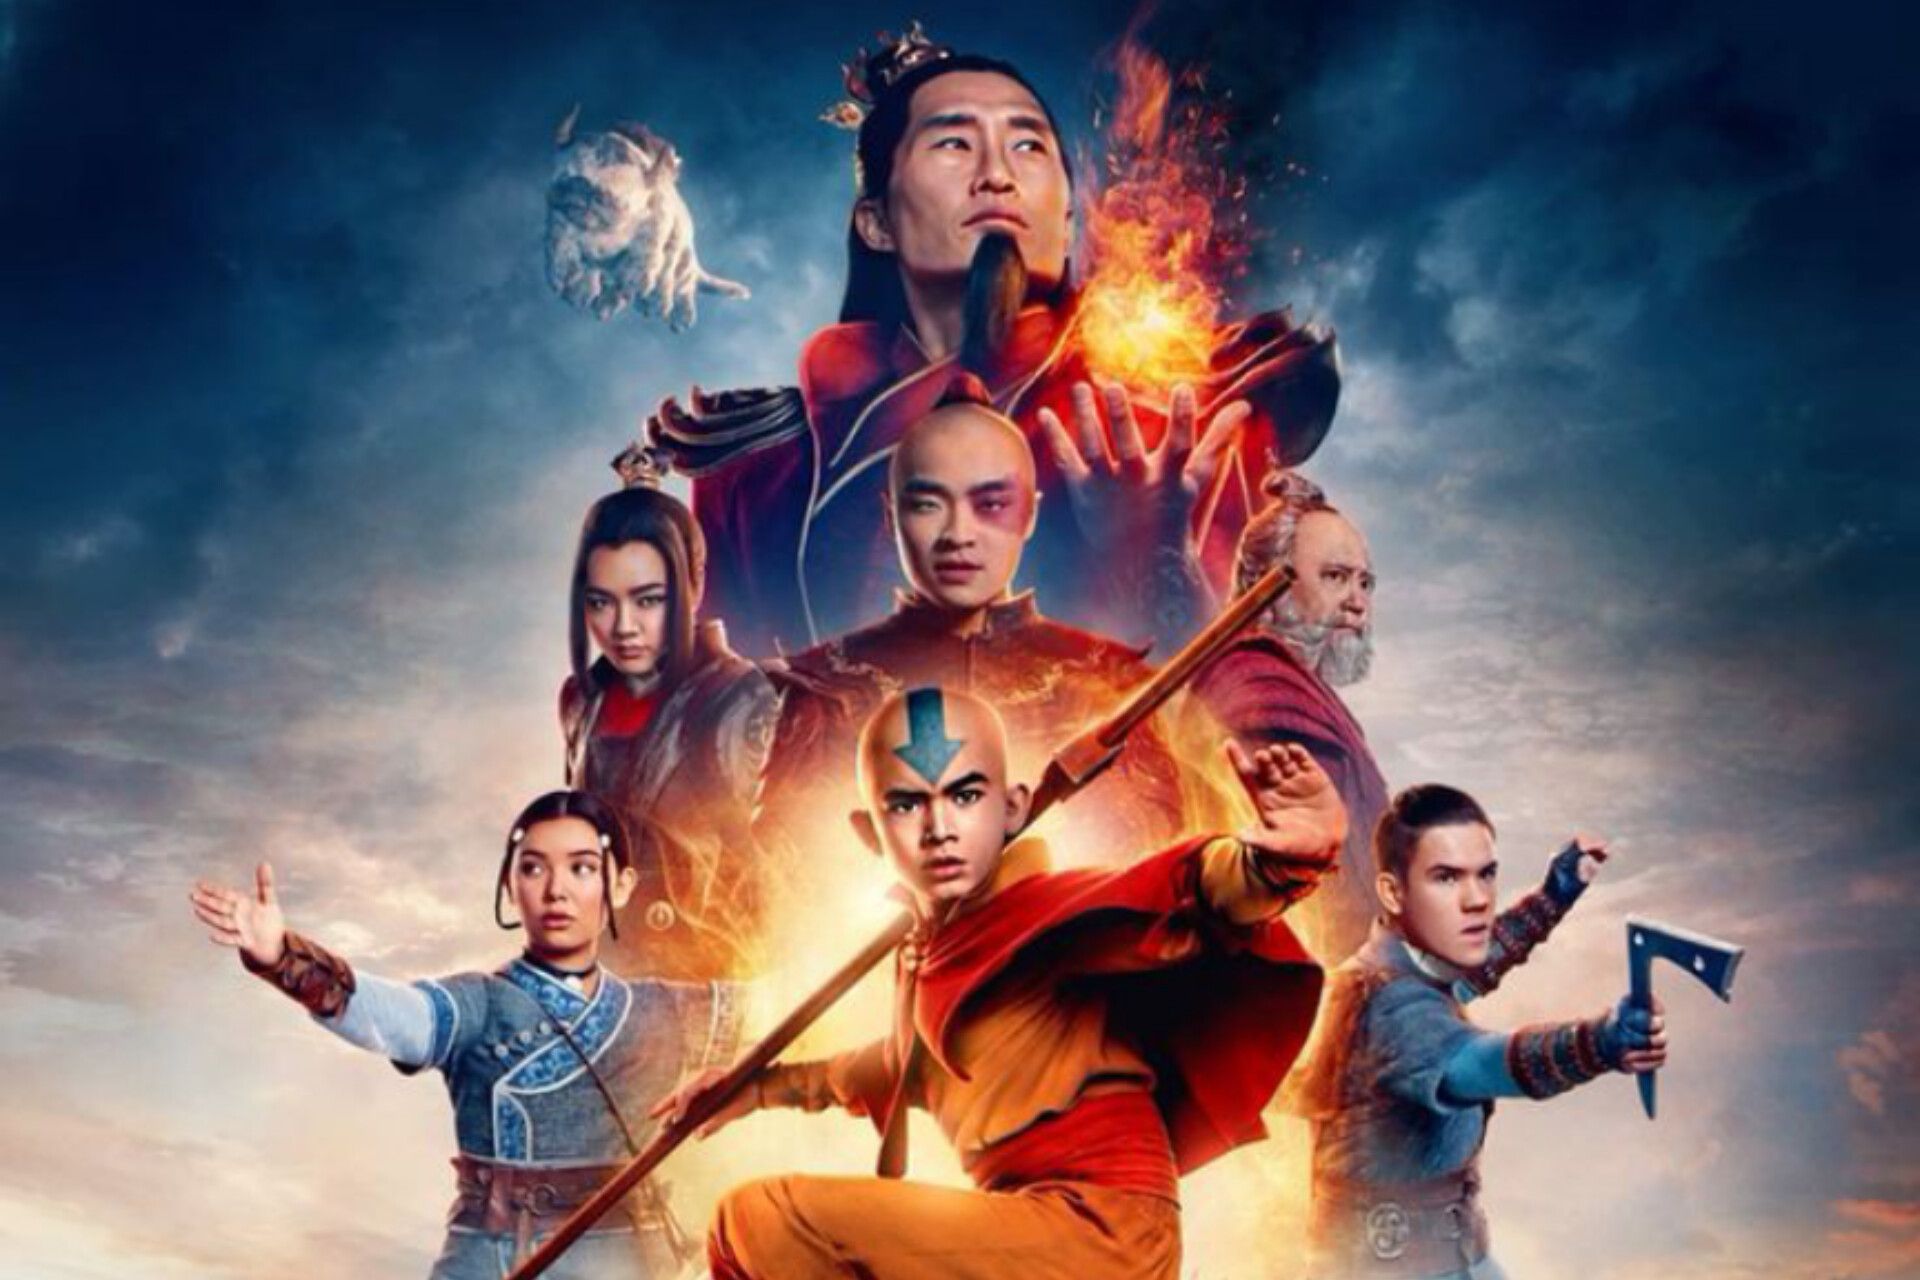 Nonton Streaming Avatar The Last Airbender Sub Indo Bukan di IndoDrama21, LayarFilm21, Bioskopkeren dan FilmApik